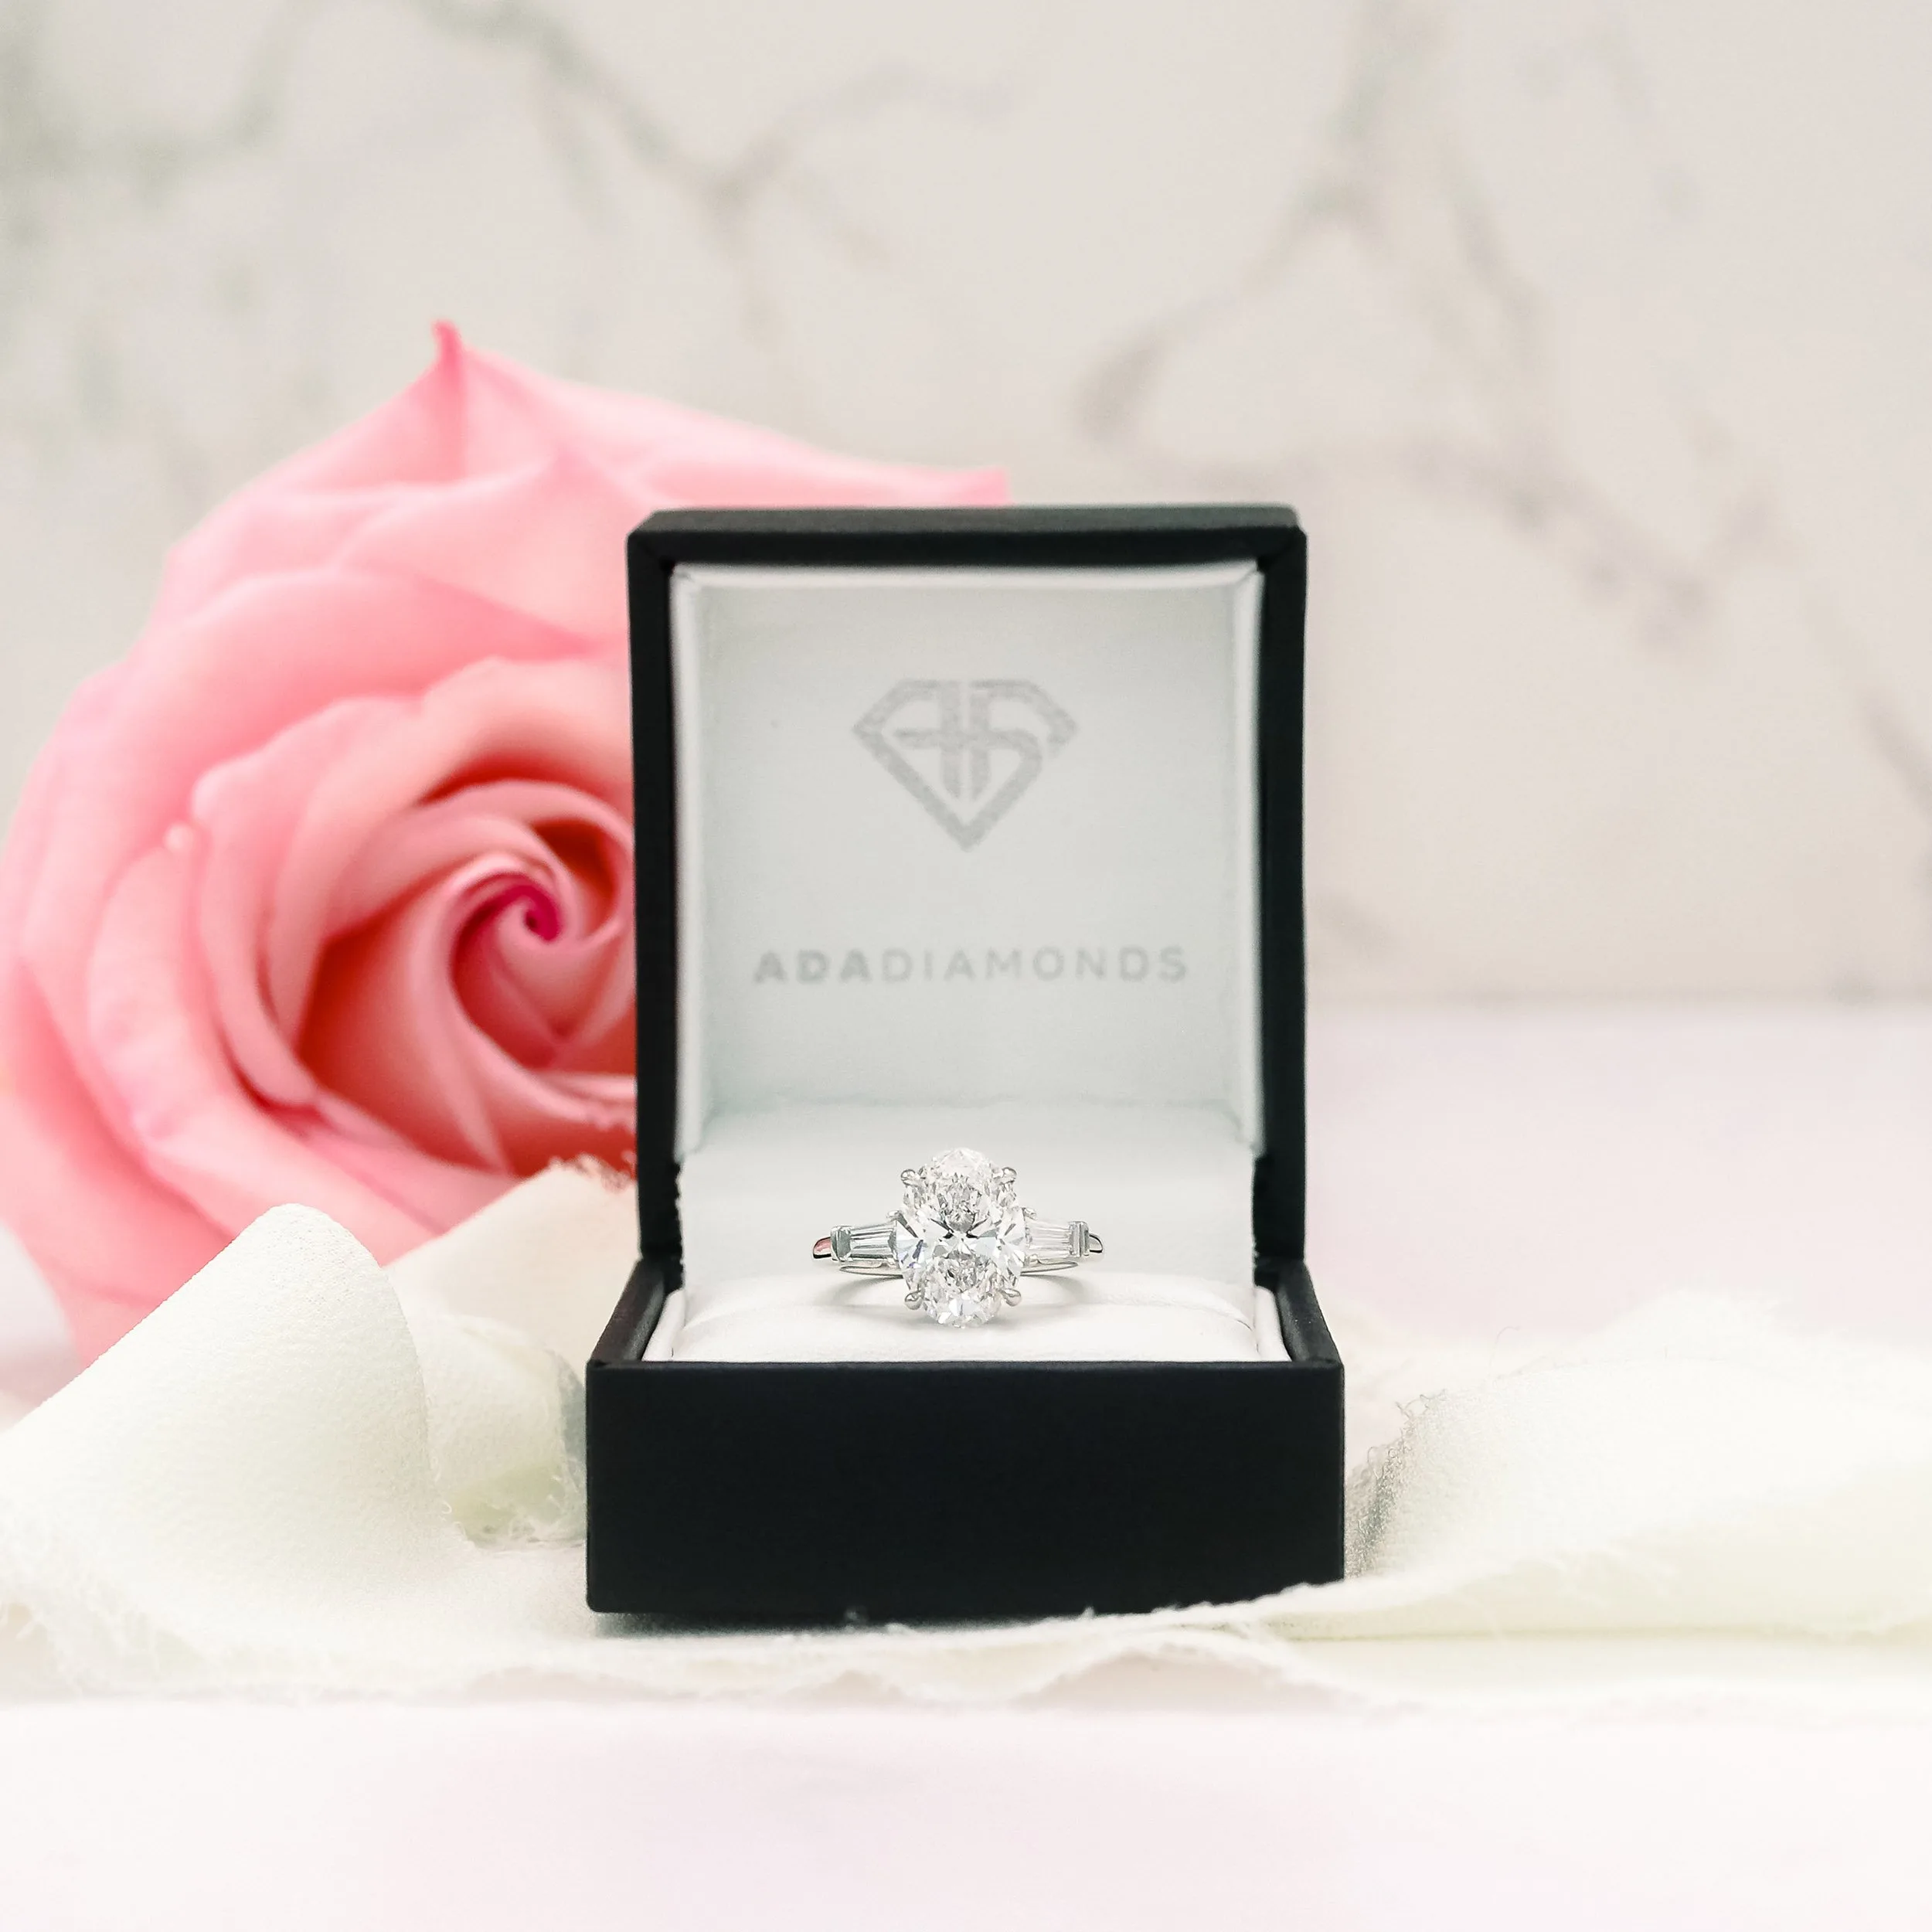 plaitnum 3.5 carat oval and baguette lab diamond engagement ring in box ada diamonds design ad 459 macro